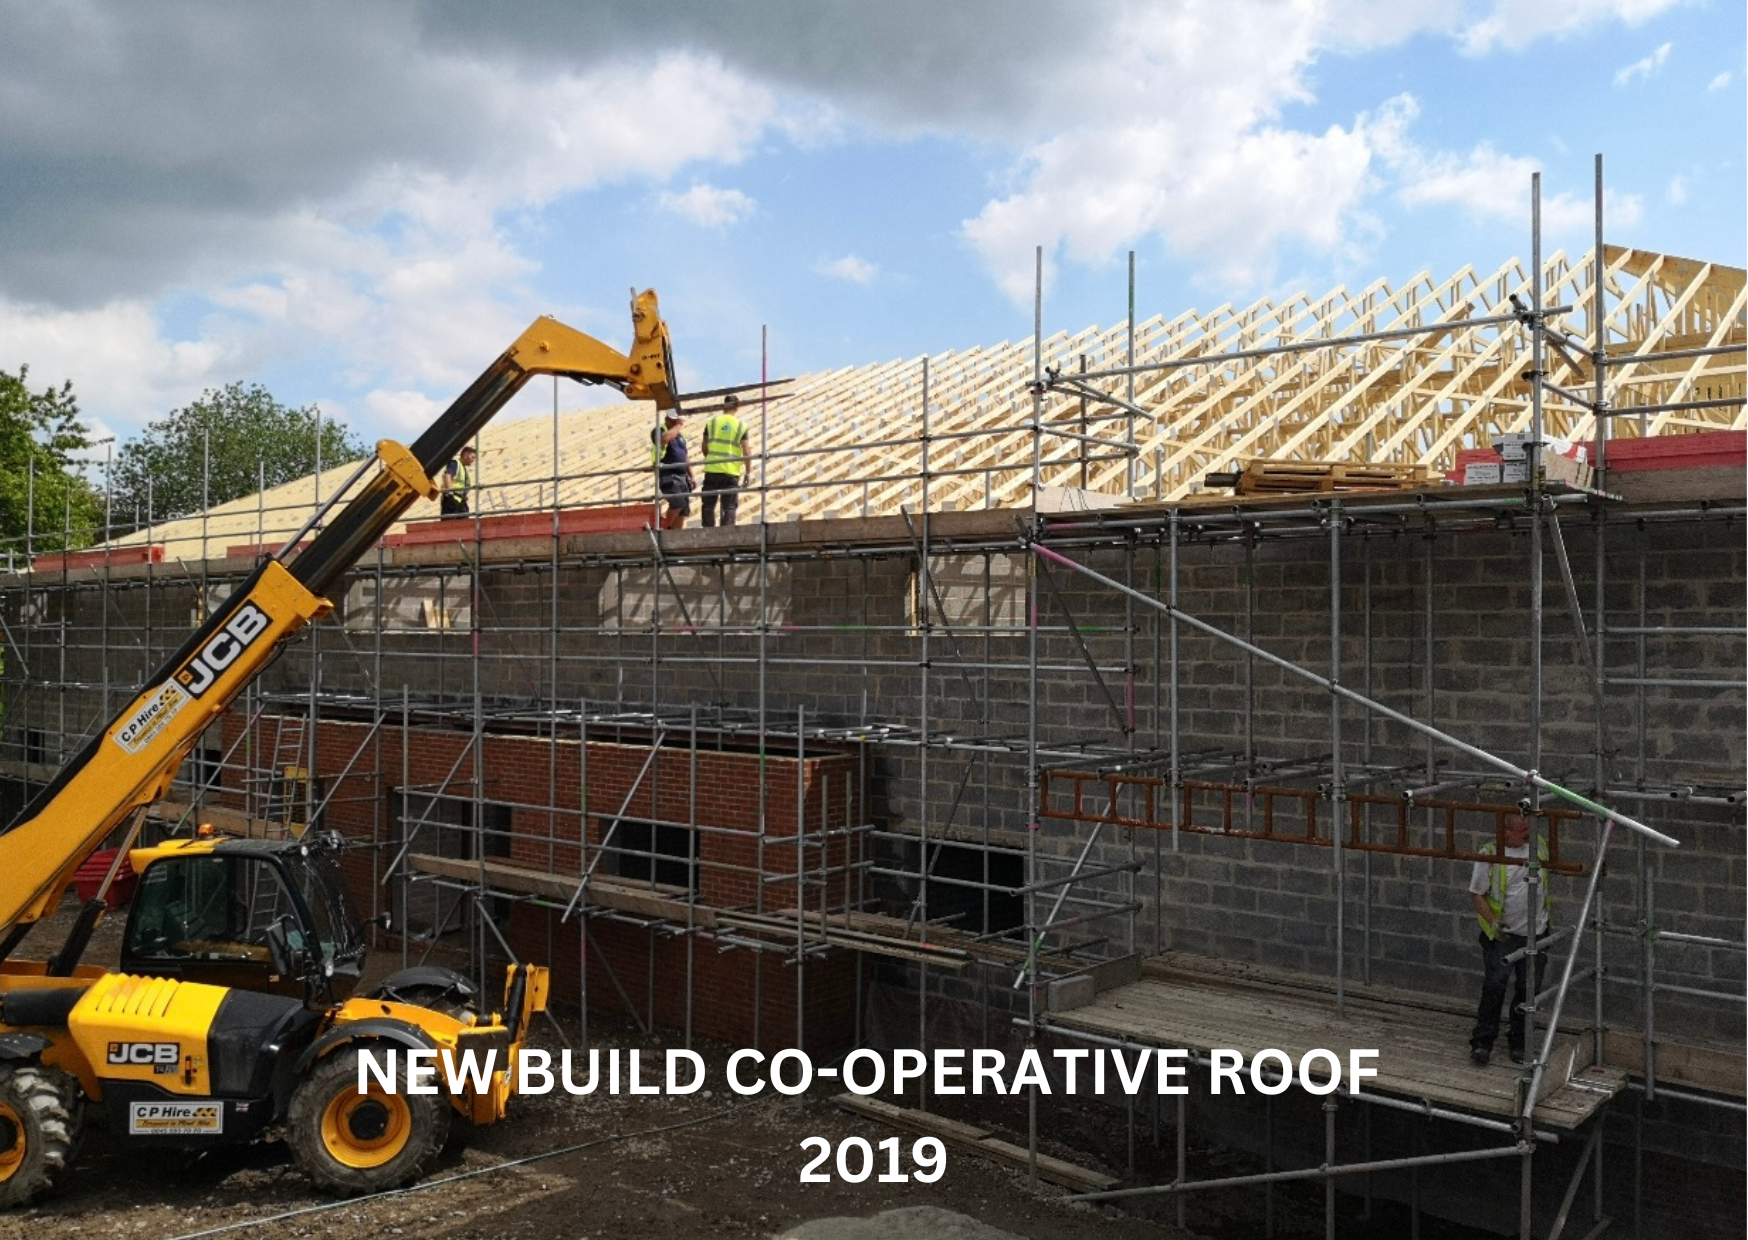 New Build Co-Operative Roof - Hendraforgan